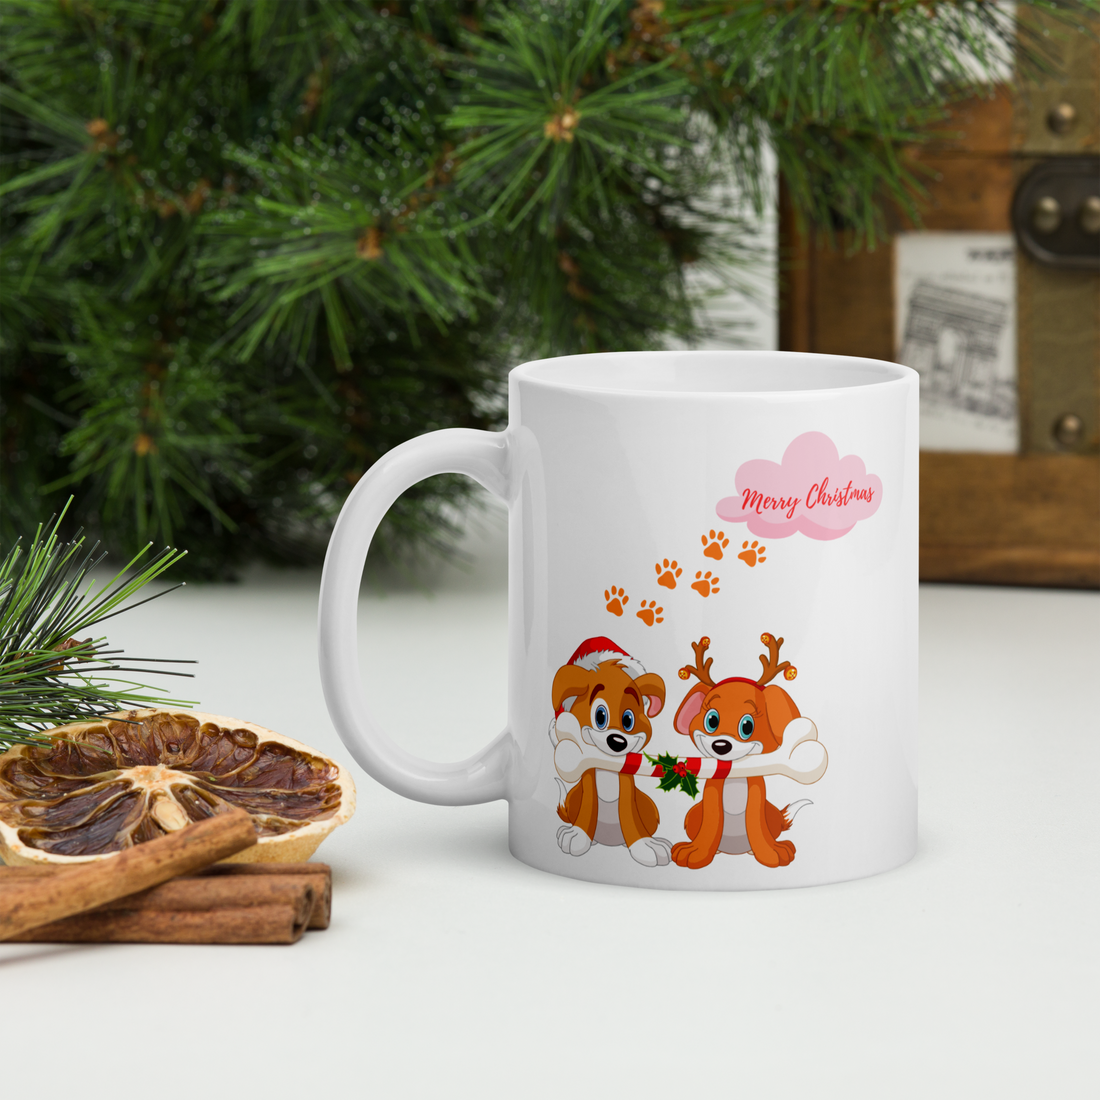 Sale - Merry Christmas Mug